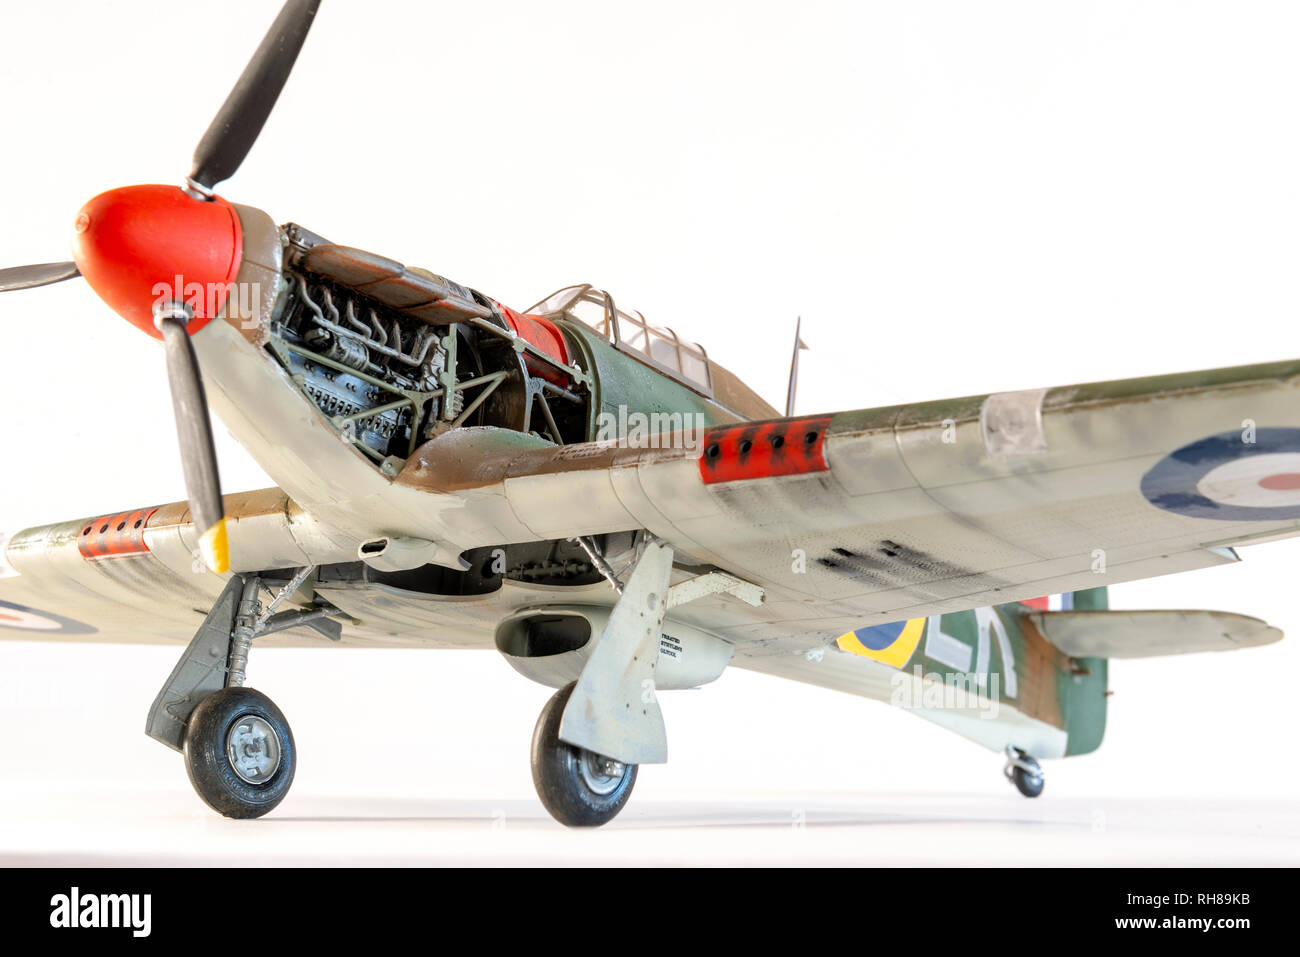 Airfix scala 1:24 modello di un Hawker Hurricane MkI aereo da combattimento come utilizzato nella battaglia di Gran Bretagna Foto Stock